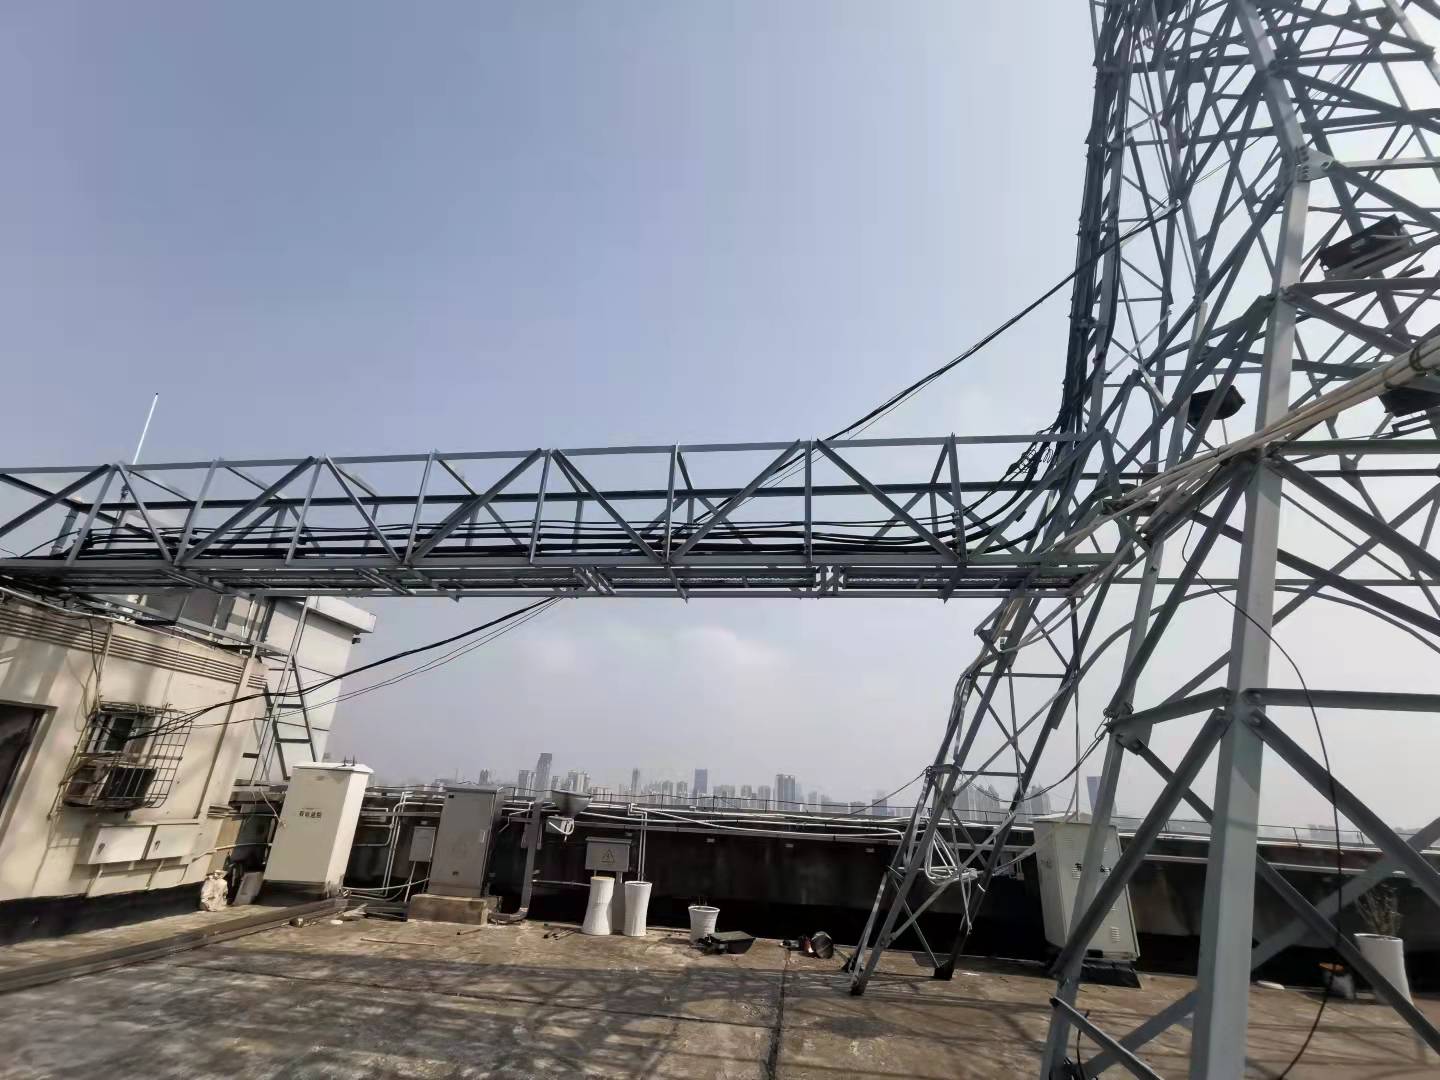 亳州当地通讯铁塔检测中心 第三方检测单位